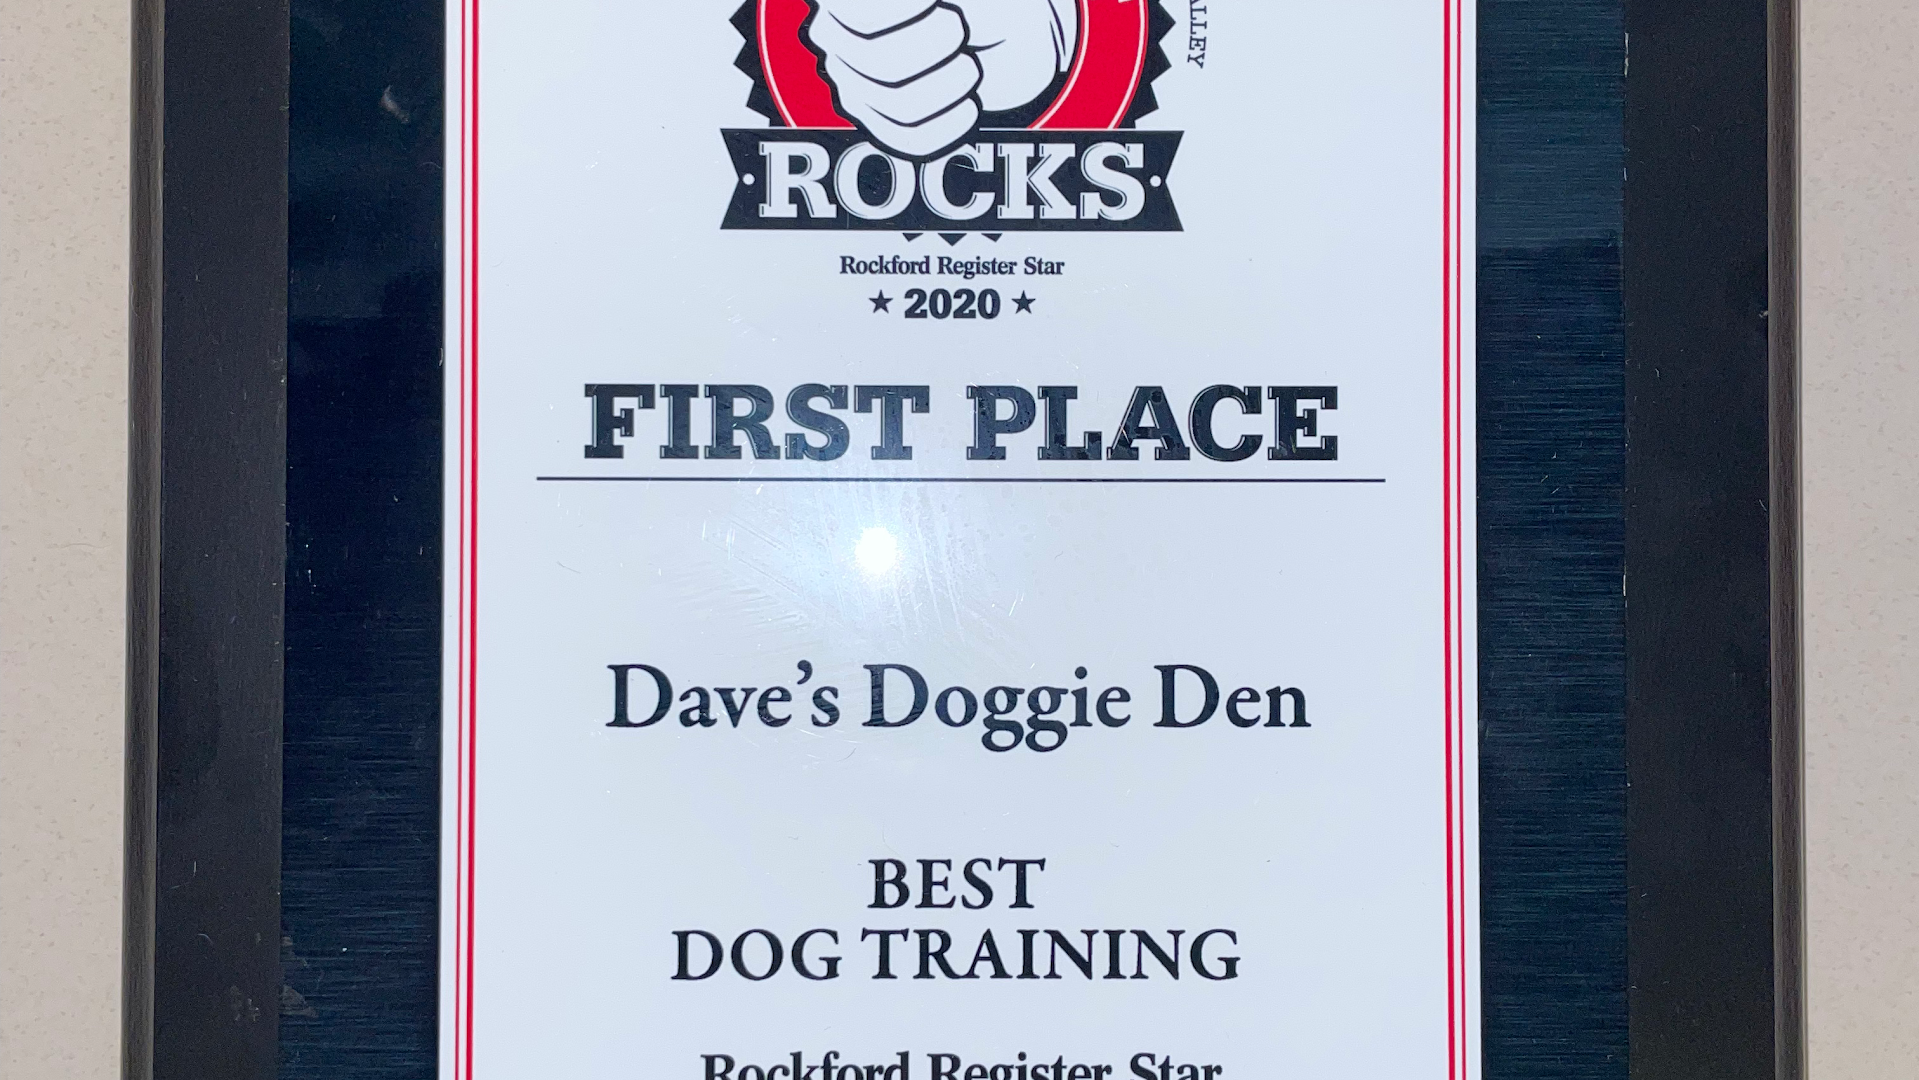 Dave's Doggie Den